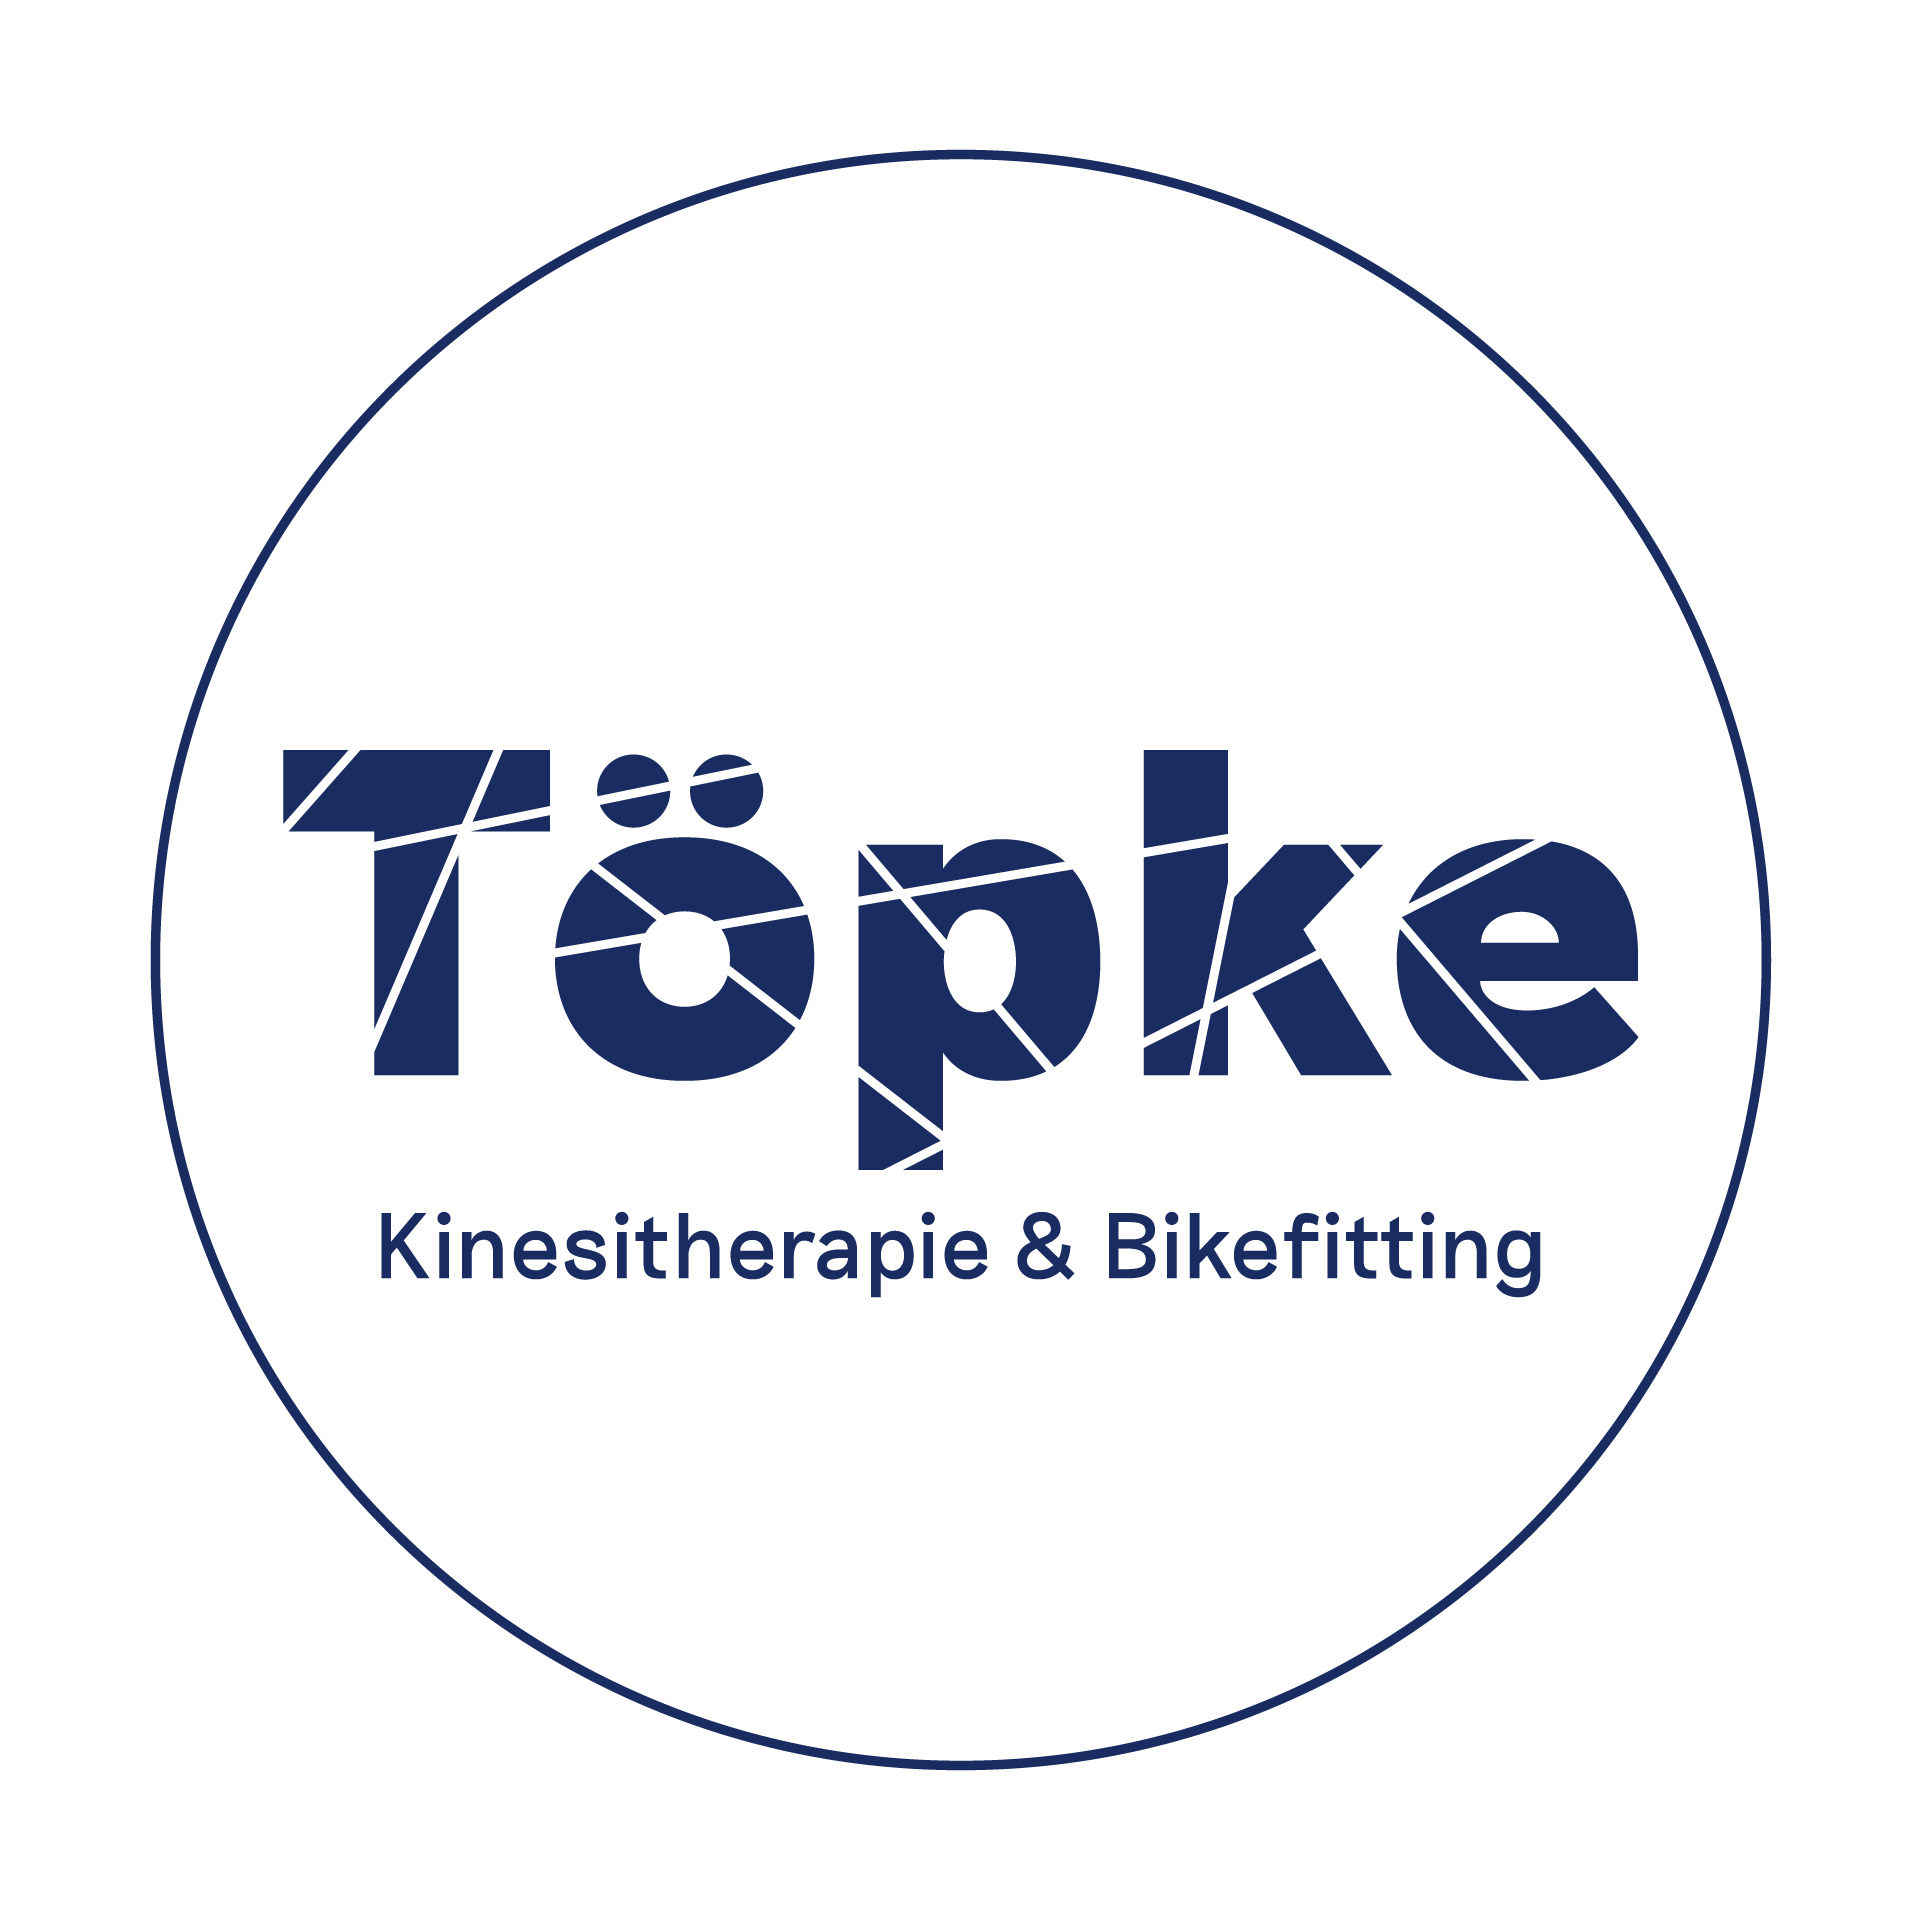 Töpke Kinesitherapie & Bikefitting